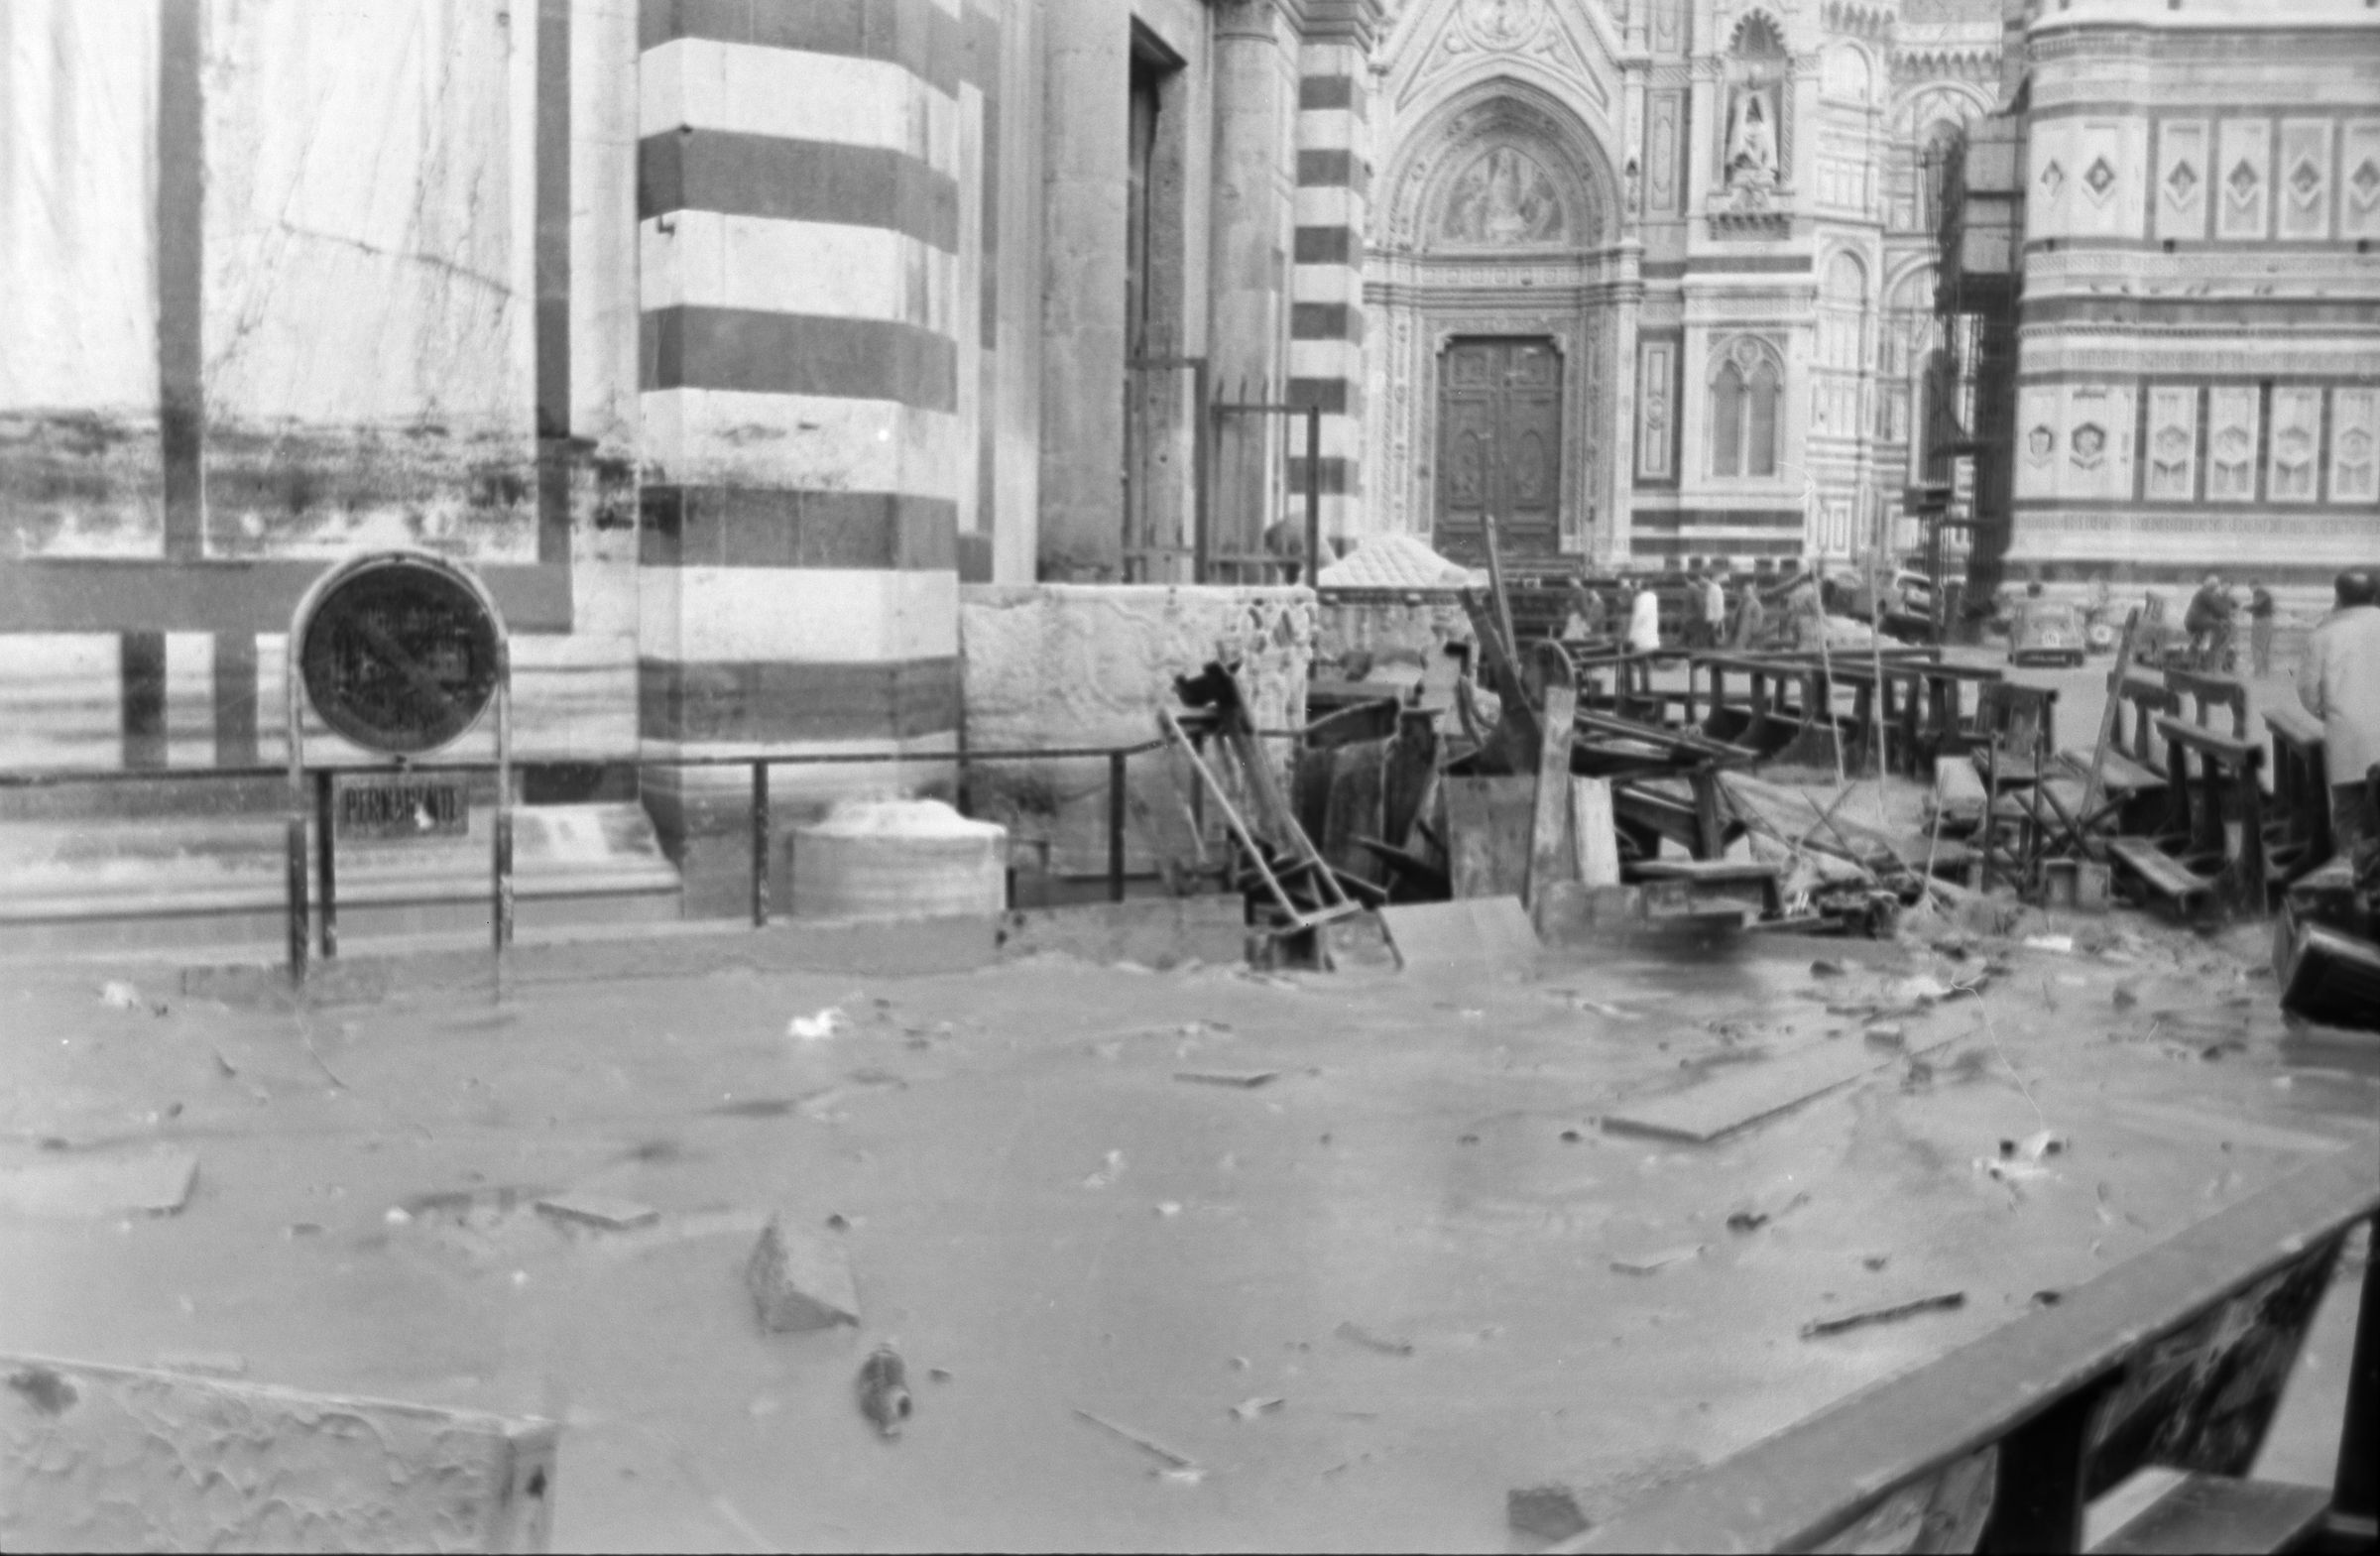 Fotografo non identificato, Firenze - Battistero di S. Giovanni, arredi danneggiati davanti alla porta sud, 1966, gelatina ai sali d'argento/pellicola, 35mm, R002038